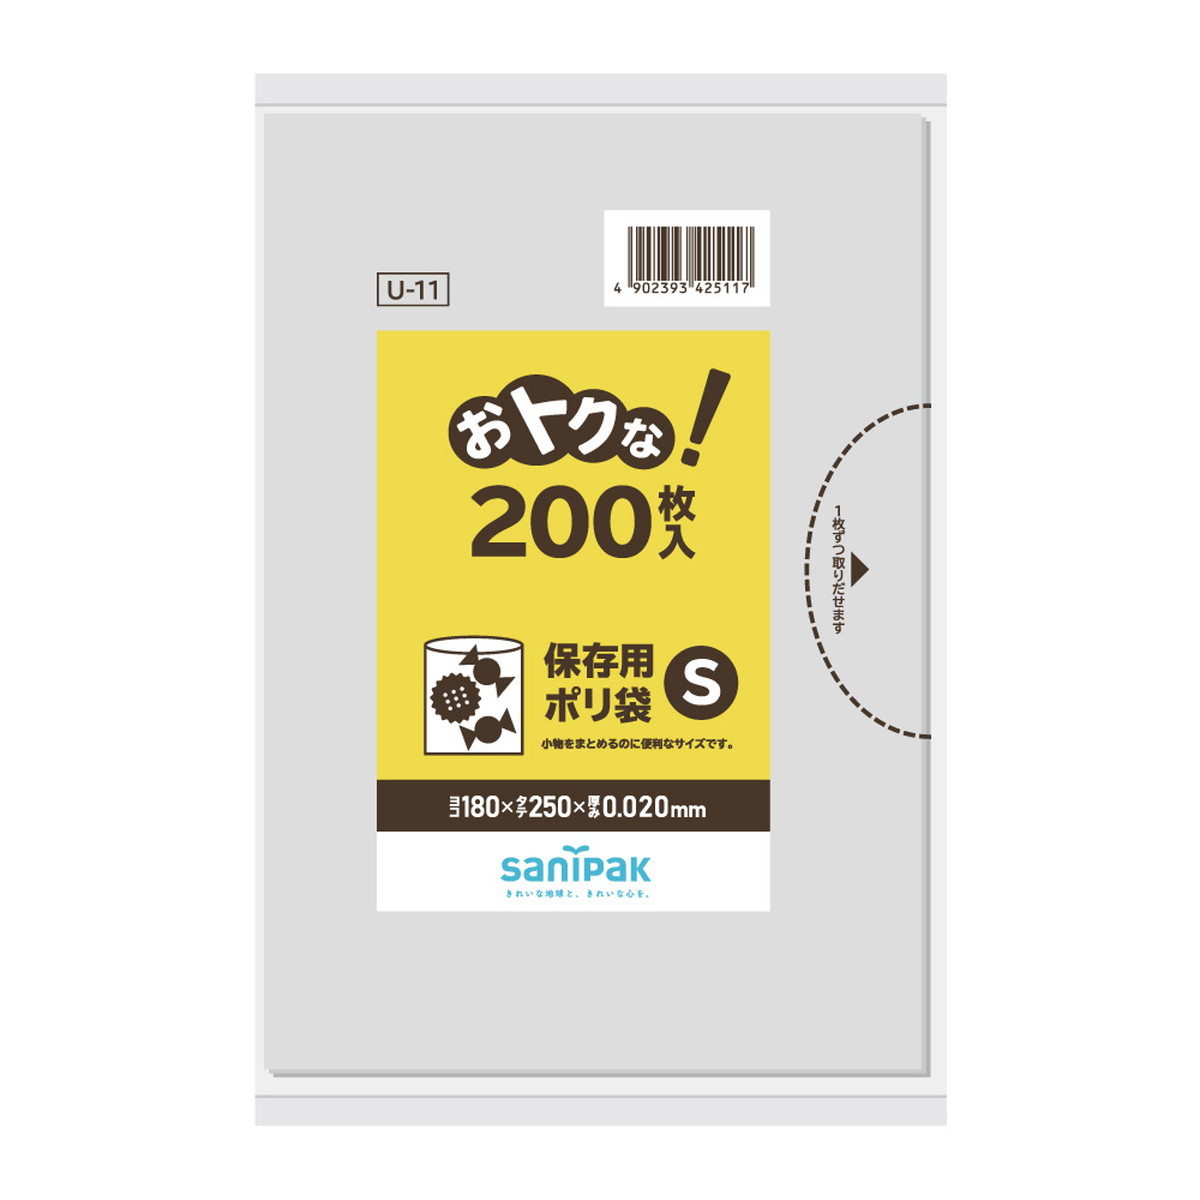 サニパック　保存用ポリ袋　200枚入り　Sサイズ　U11おトクな保存袋　透明 ( 4902393425117 )